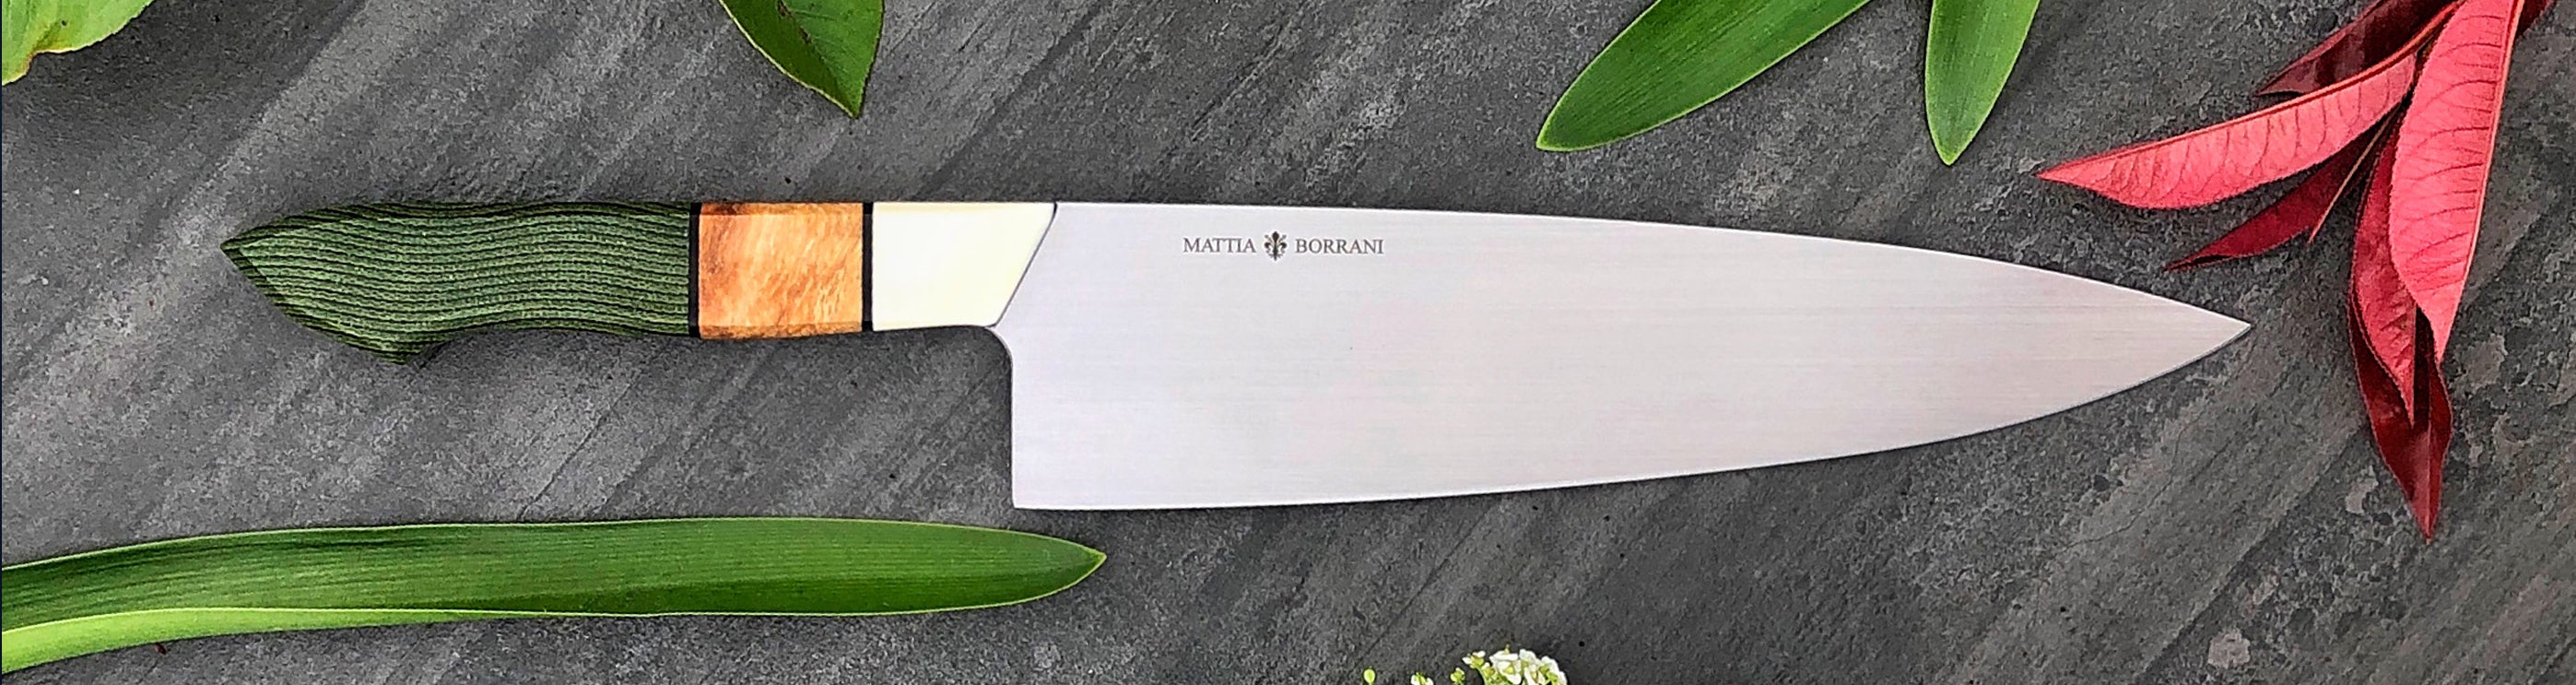 8.2 Bowie Chef® Custom – Mattia Borrani Cutlery